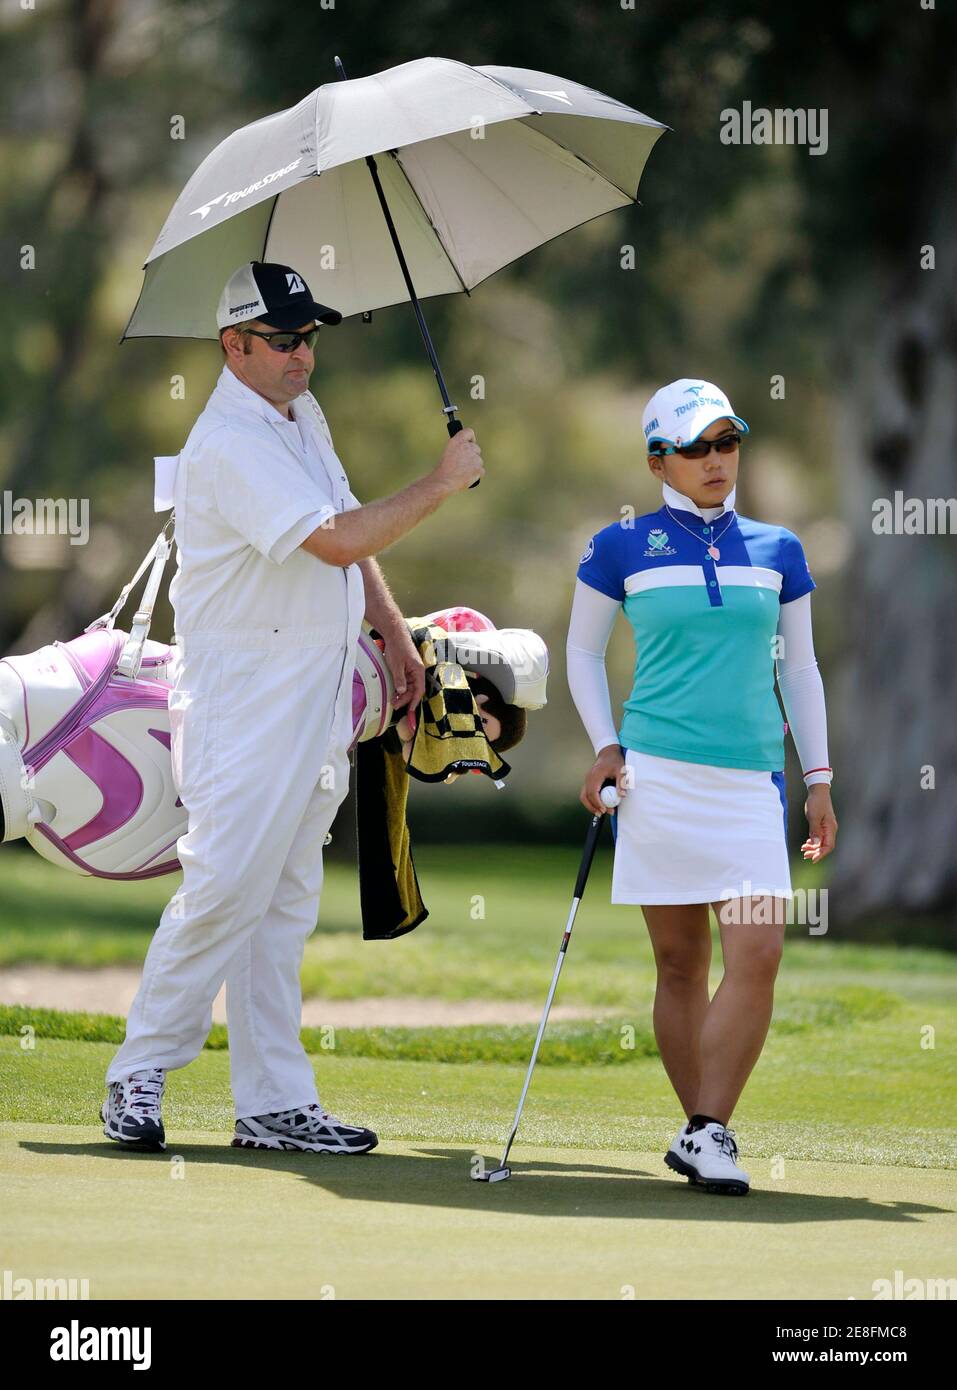 Chie Arimura (R) von Japan wird von ihr Caddie mit einem Regenschirm beschattet, während sie darauf wartet, Putten auf dem vierten Loch während der dritten Runde Wiedergabe der LPGA ist Kraft Nabisco Women Golf-Meisterschaft in Rancho Mirage, Kalifornien 3. April 2010.  REUTERS/Gus Ruelas (Vereinigte Staaten - Tags: SPORT-GOLF) Stockfoto